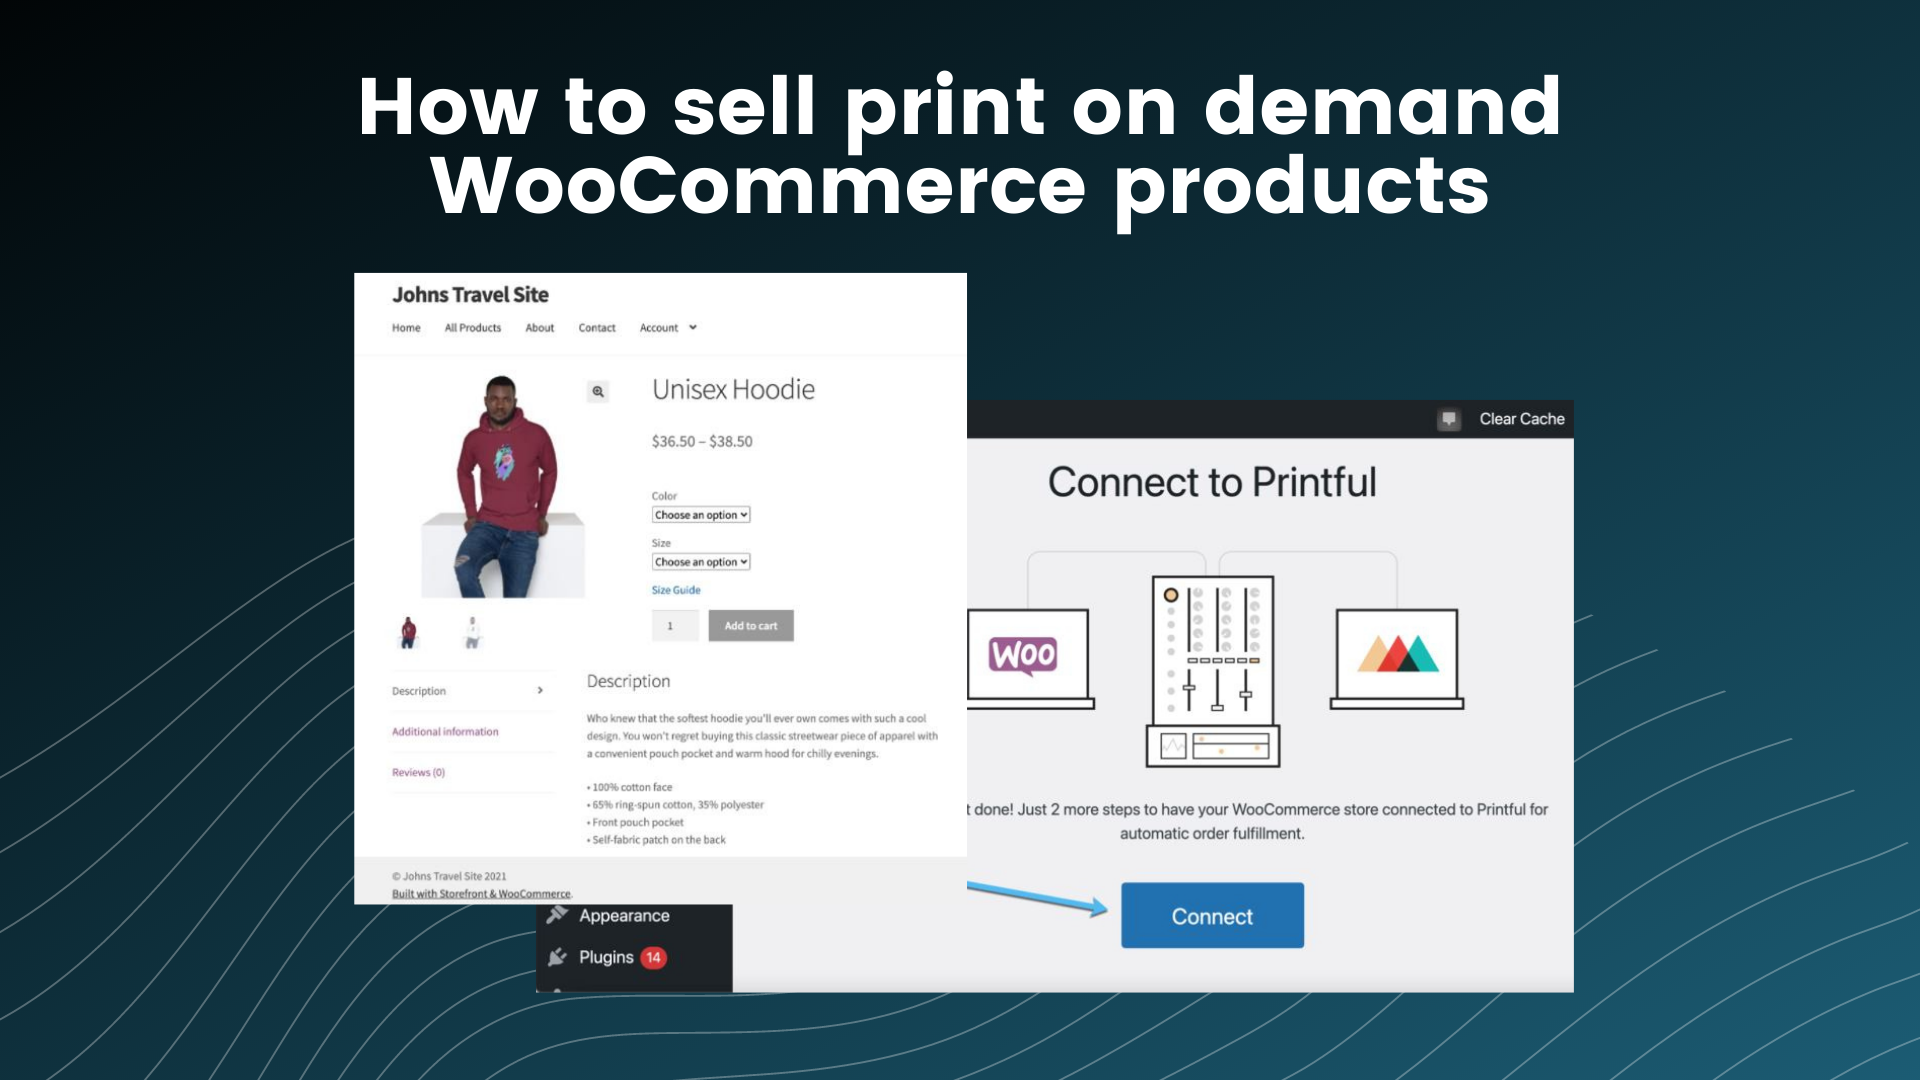 Ofte talt Øde Gå igennem Ultimate Guide for Selling Print On Demand WooCommerce